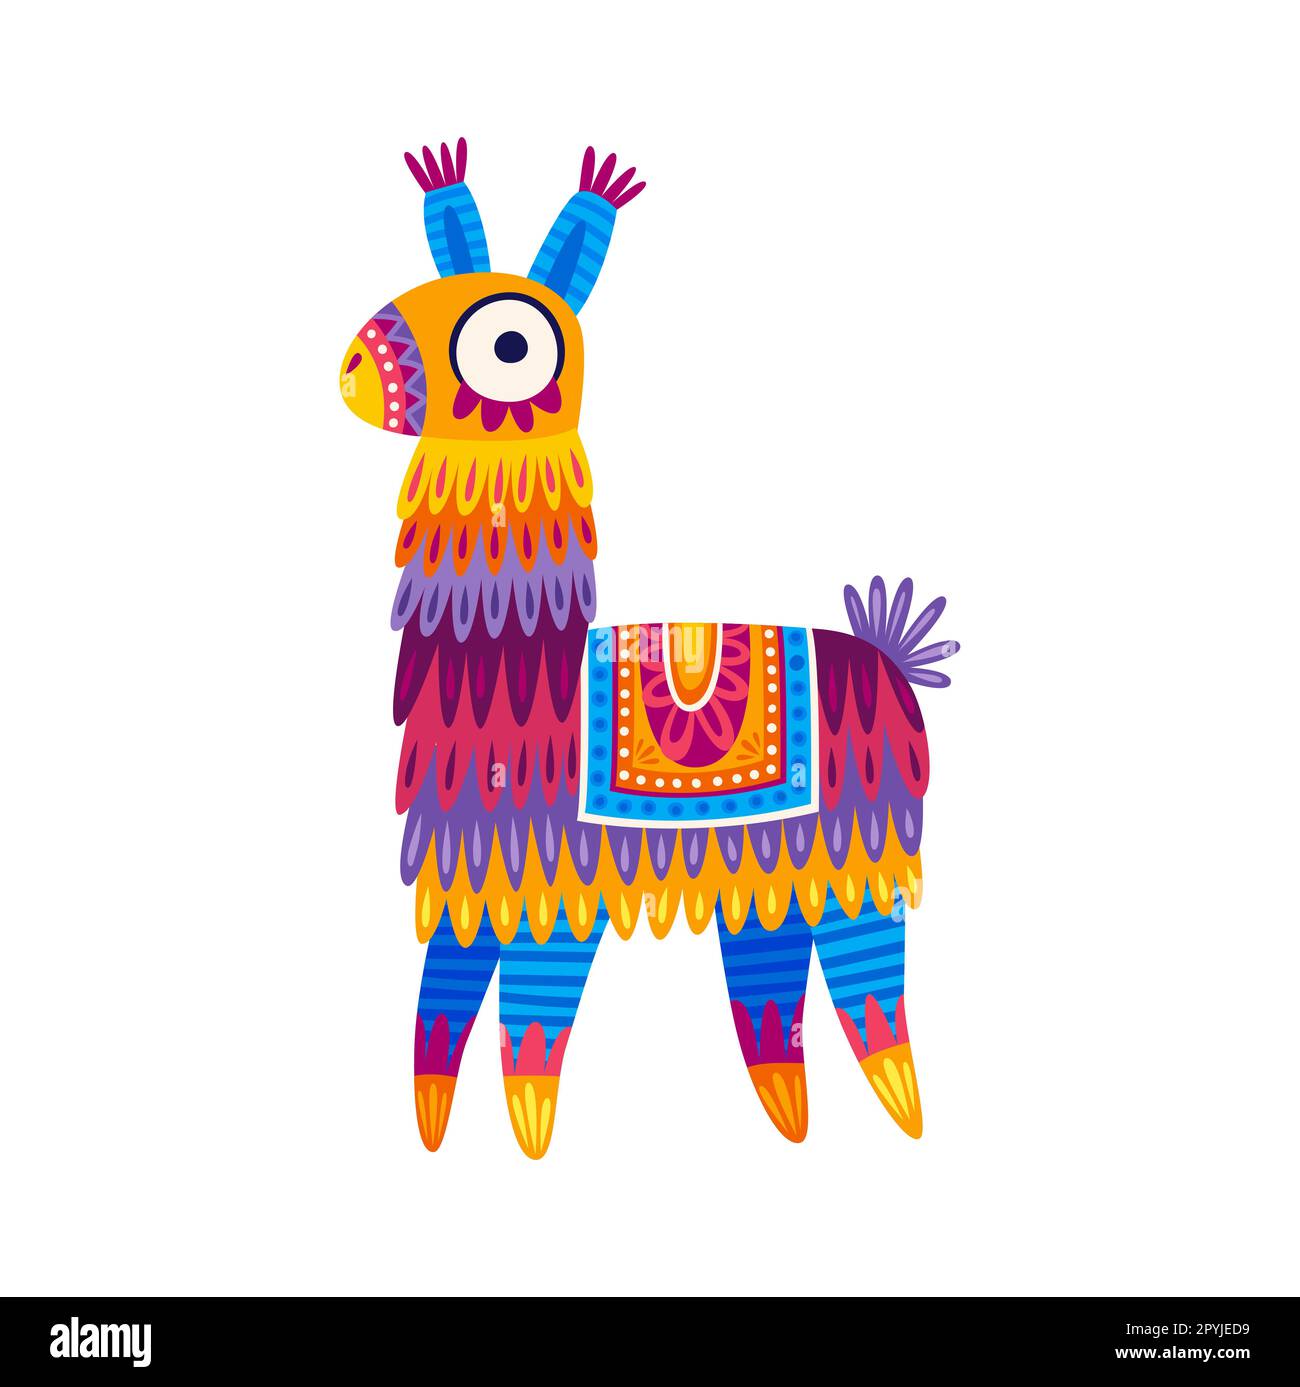 Dessin animé llama ou mignon alpaga, comique péruvien animal drôle personnage. Vecteur tricoté jouet lama dans le design ethnique, enfant bébé lama Illustration de Vecteur